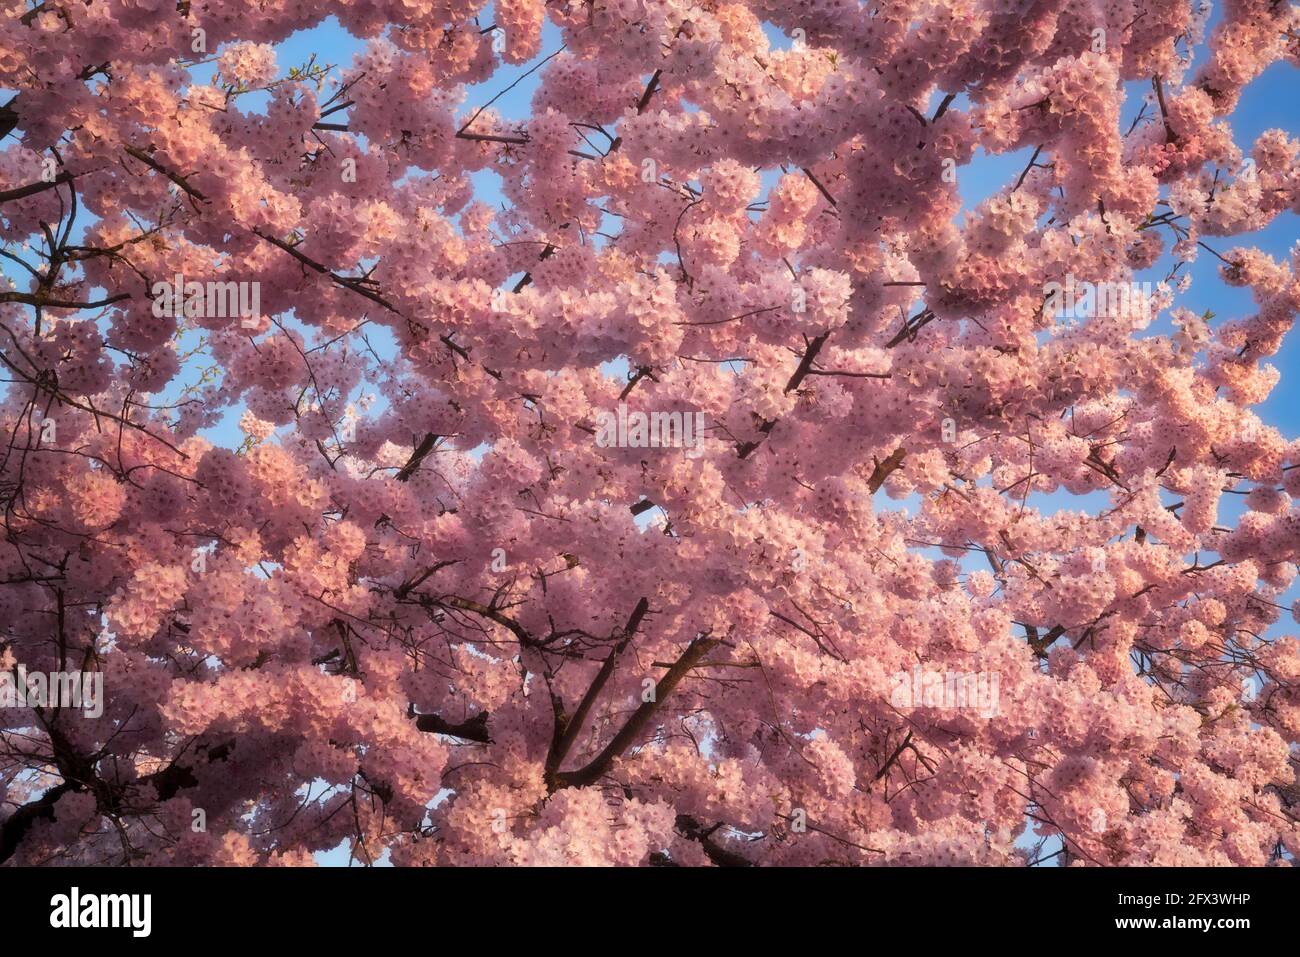 La luz de la tarde brilla en estos árboles de cerezo japoneses que florecen en primavera y se encuentran entre muchos barrios urbanos del condado de Multnomah en Oregón. Foto de stock